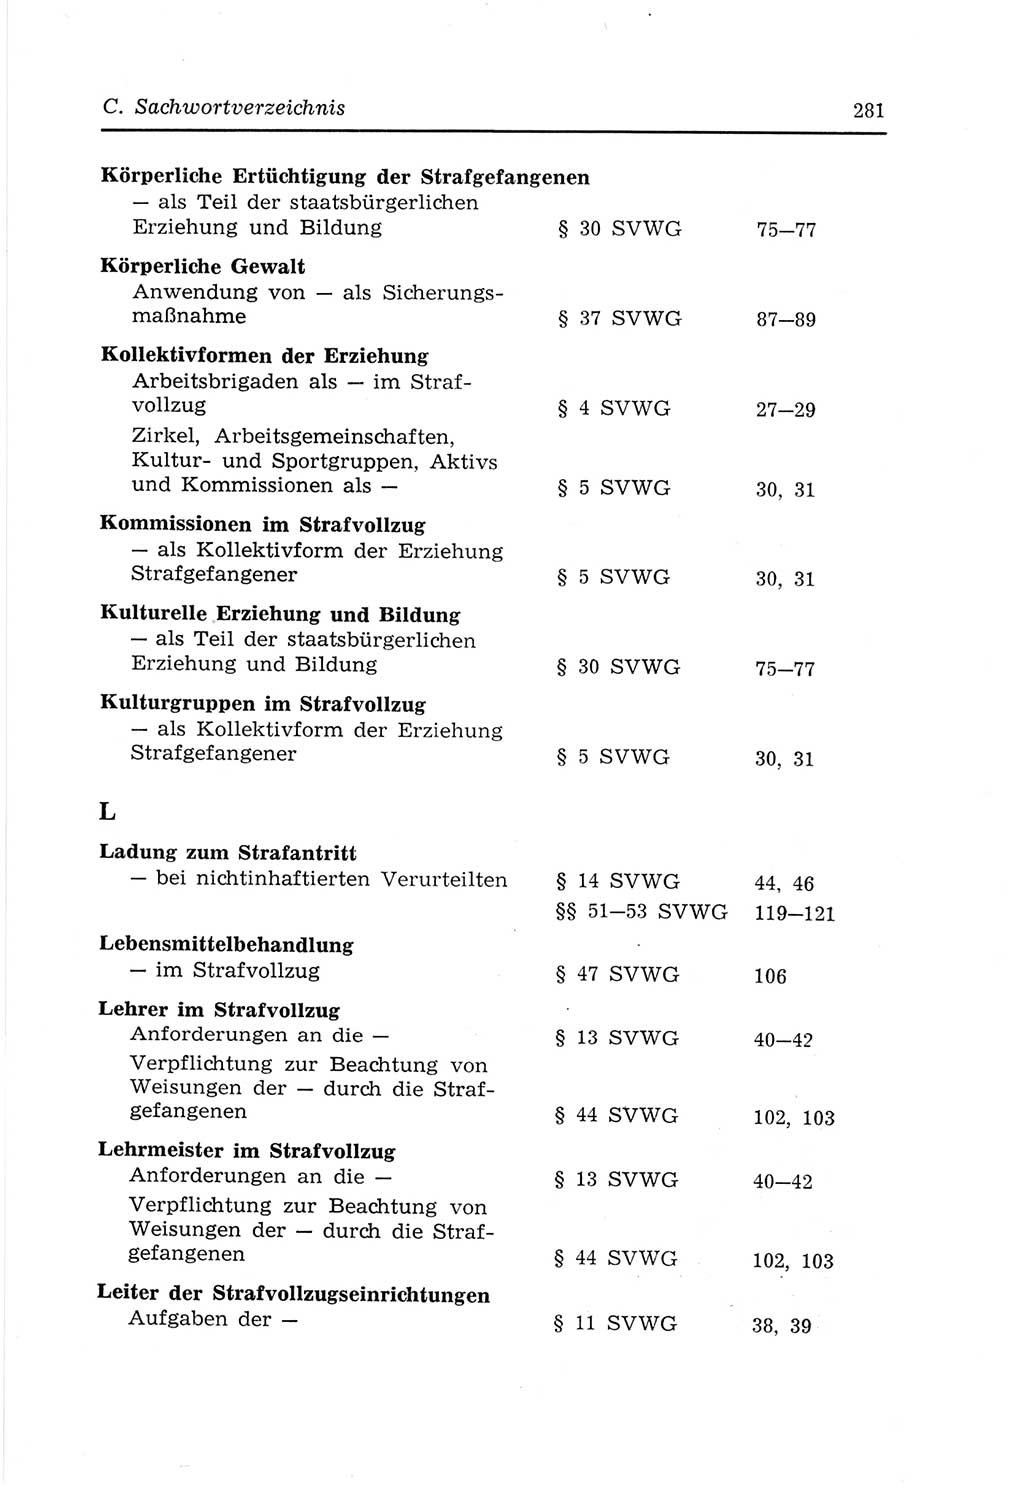 Strafvollzugs- und Wiedereingliederungsgesetz (SVWG) der Deutschen Demokratischen Republik (DDR) 1968, Seite 281 (SVWG DDR 1968, S. 281)